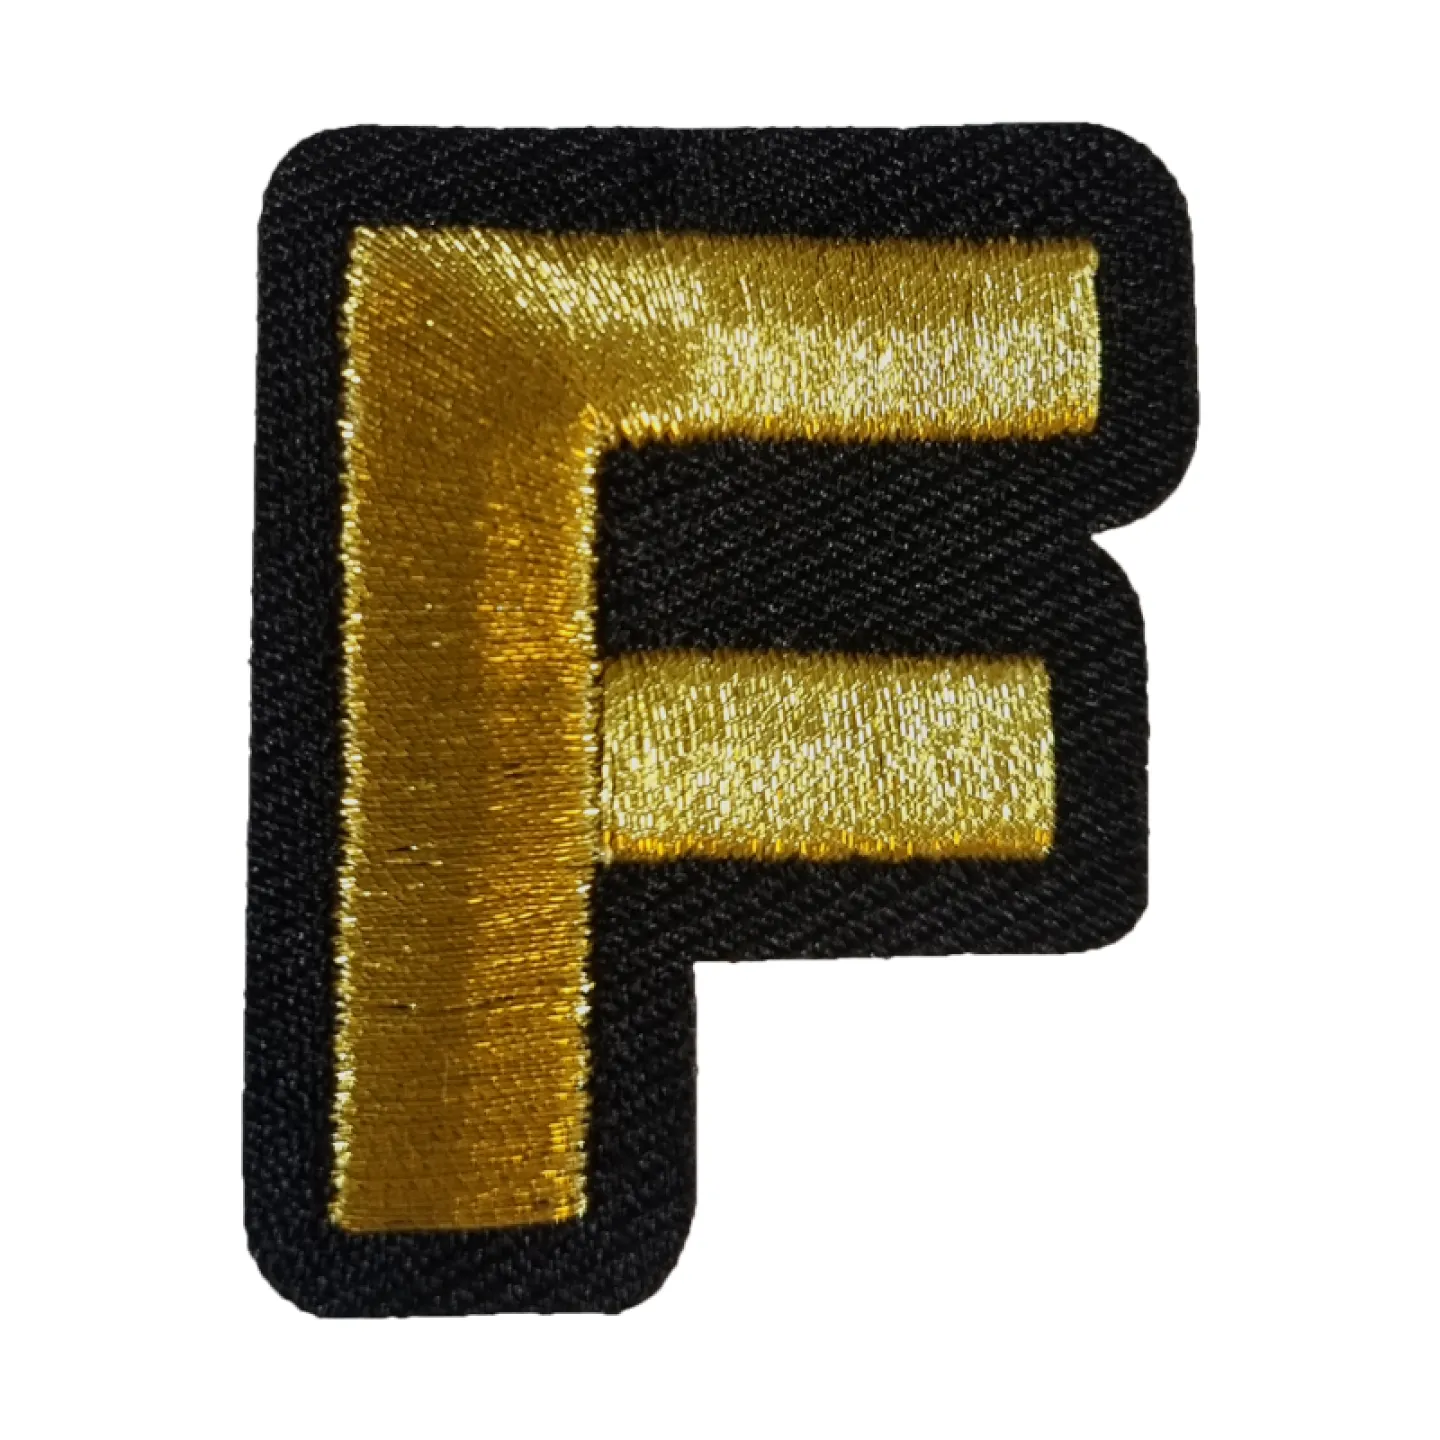 Kruikenstad embleem gouden letter F goedkoop.